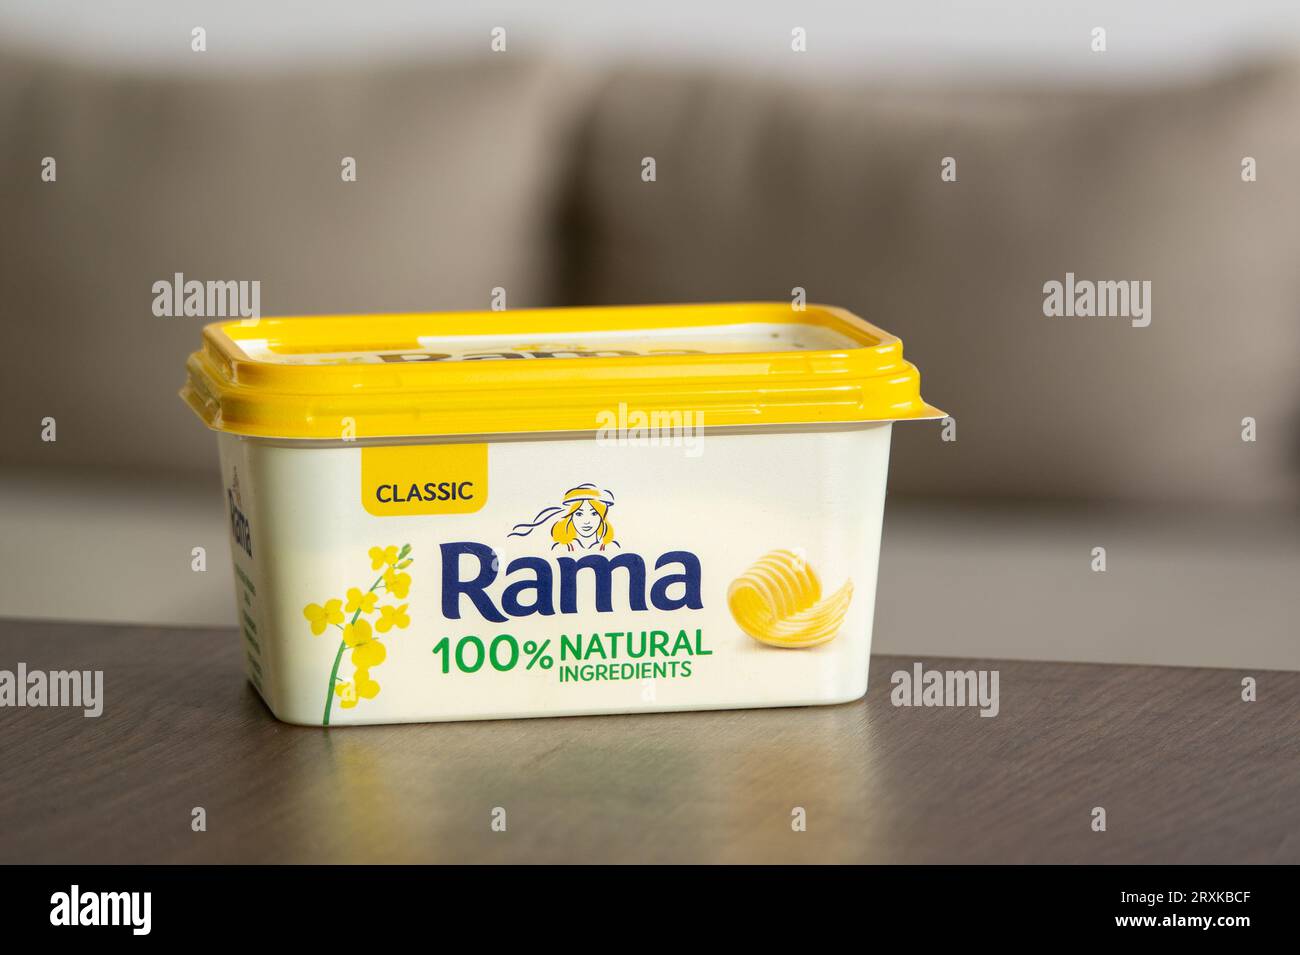 OSTRAVA, RÉPUBLIQUE TCHÈQUE - 21 JUIN 2023 : Rama Classic 100% margarine au beurre naturel dans une boîte jaune typique dans la cuisine Banque D'Images